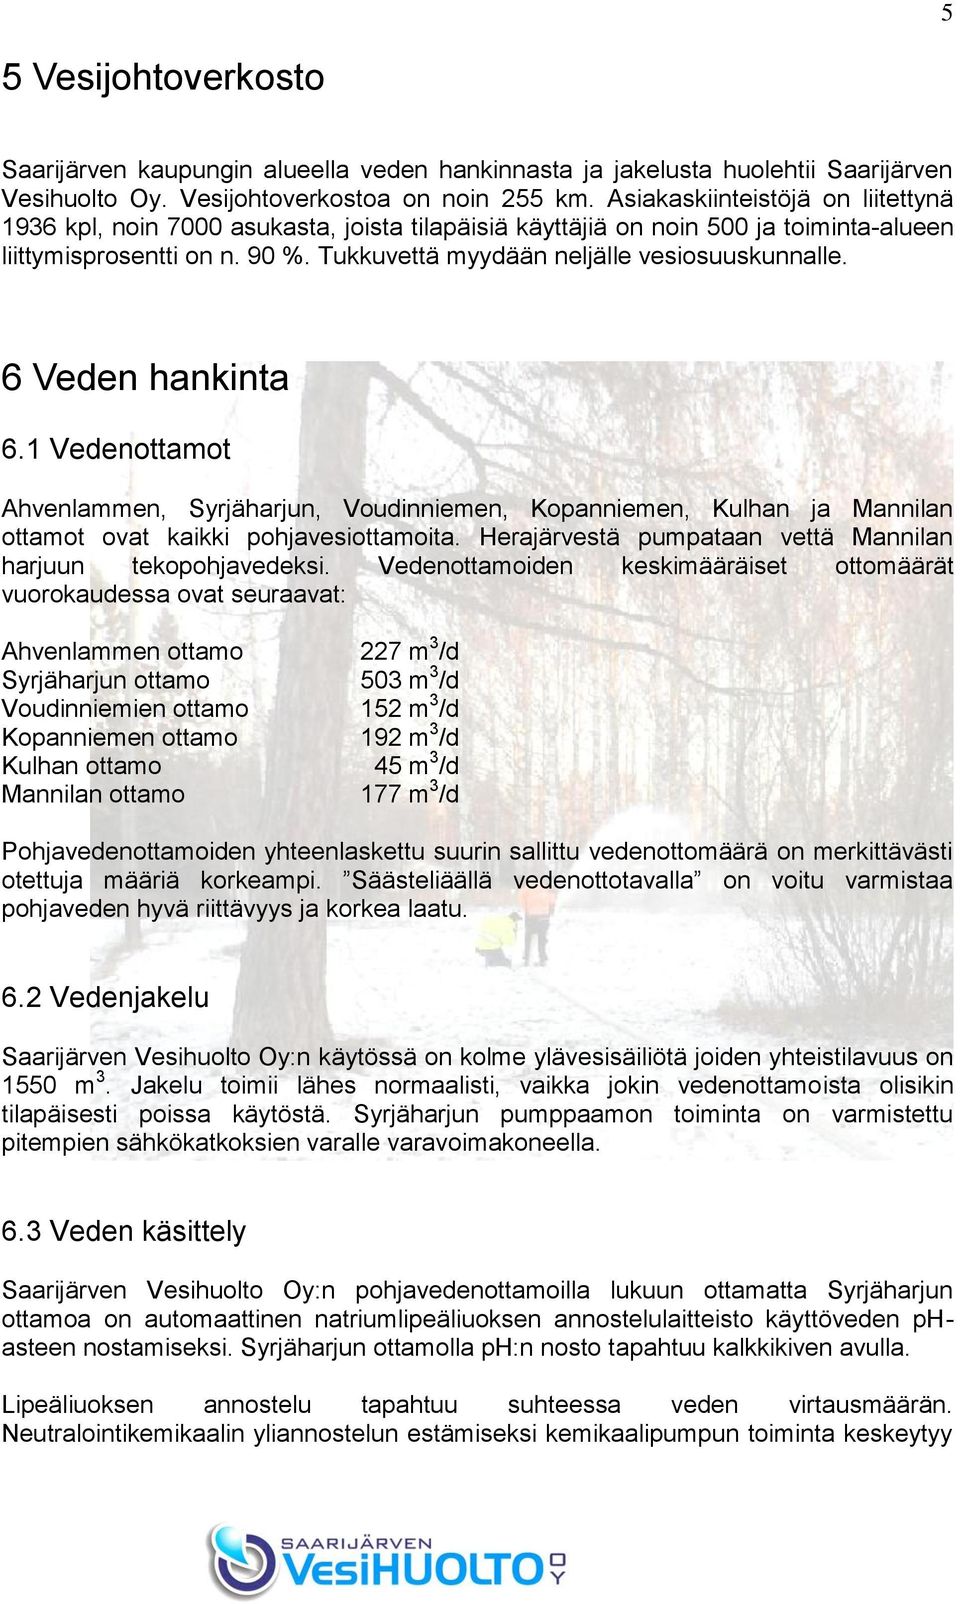 6 Veden hankinta 6.1 Vedenottamot Ahvenlammen, Syrjäharjun, Voudinniemen, Kopanniemen, Kulhan ja Mannilan ottamot ovat kaikki pohjavesiottamoita.